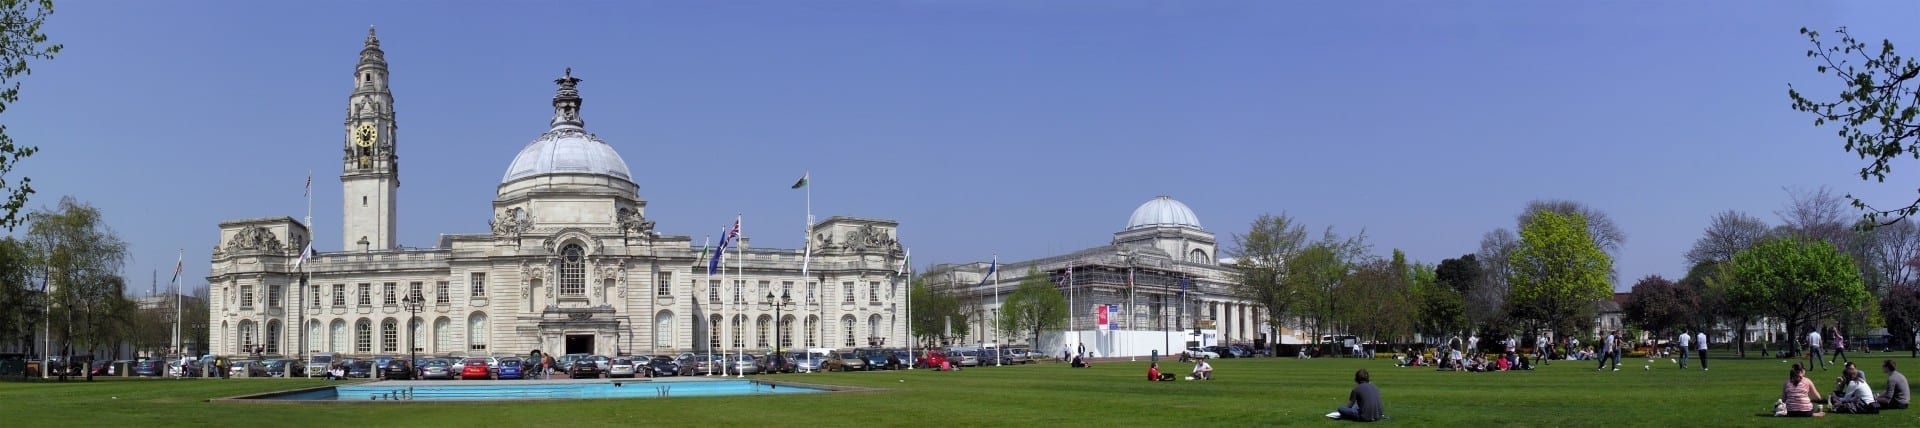 Hermoso centro cívico frente al Ayuntamiento (izquierda) y el Museo Nacional de Gales (derecha) Cardiff Reino Unido